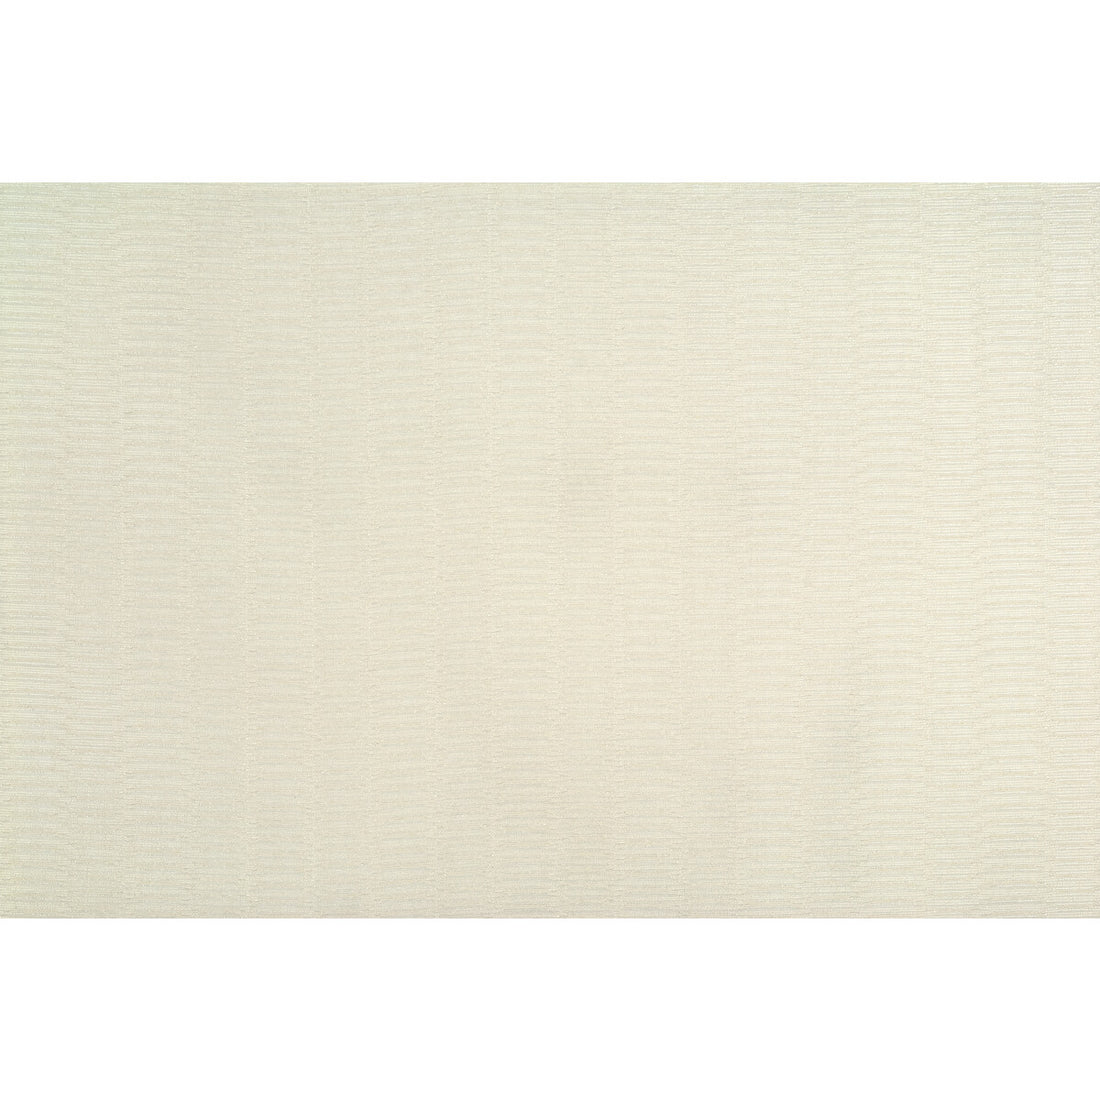 Kravet Basics fabric in 4292-1 color - pattern 4292.1.0 - by Kravet Basics